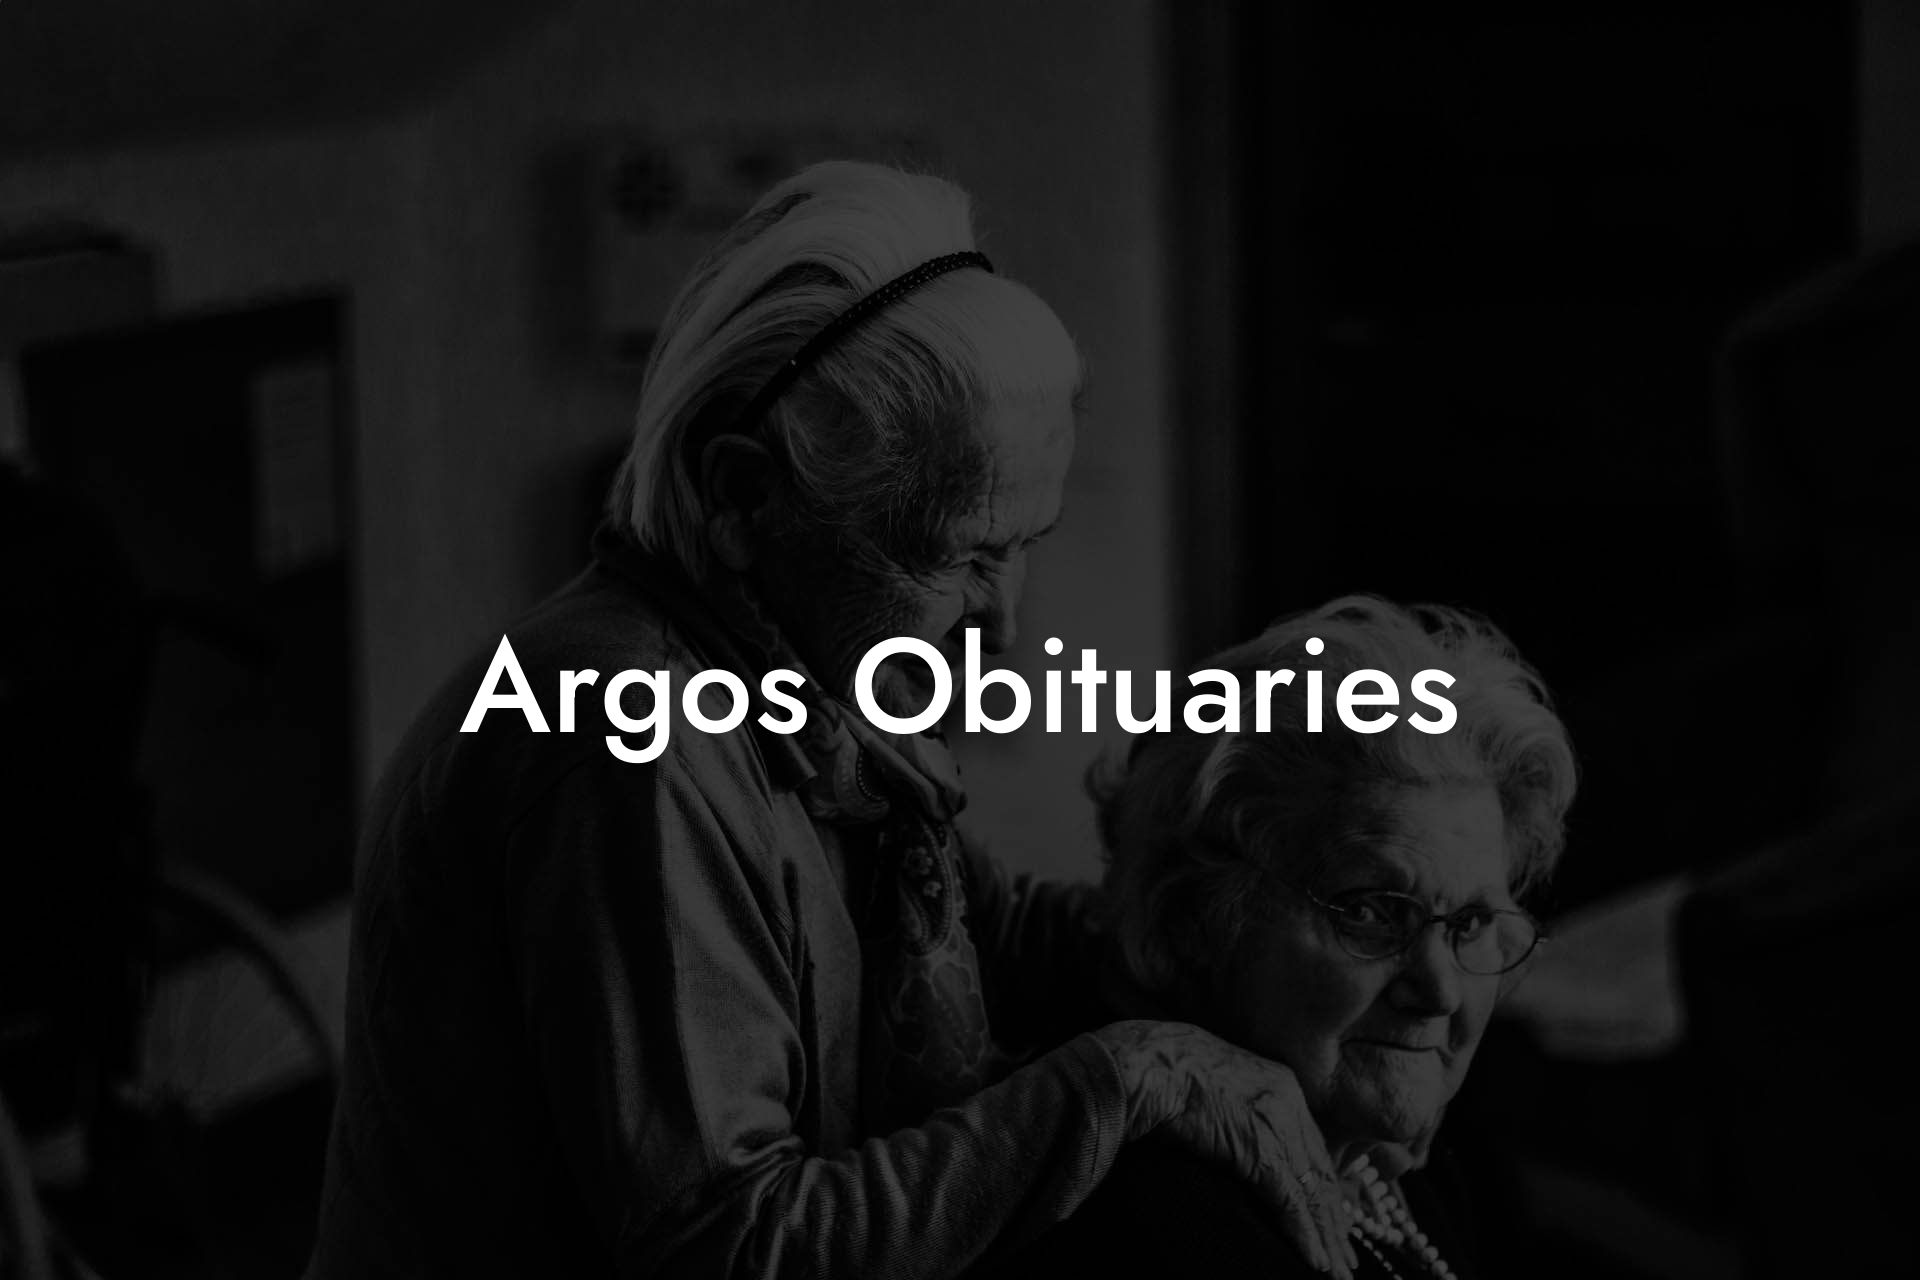 Argos Obituaries